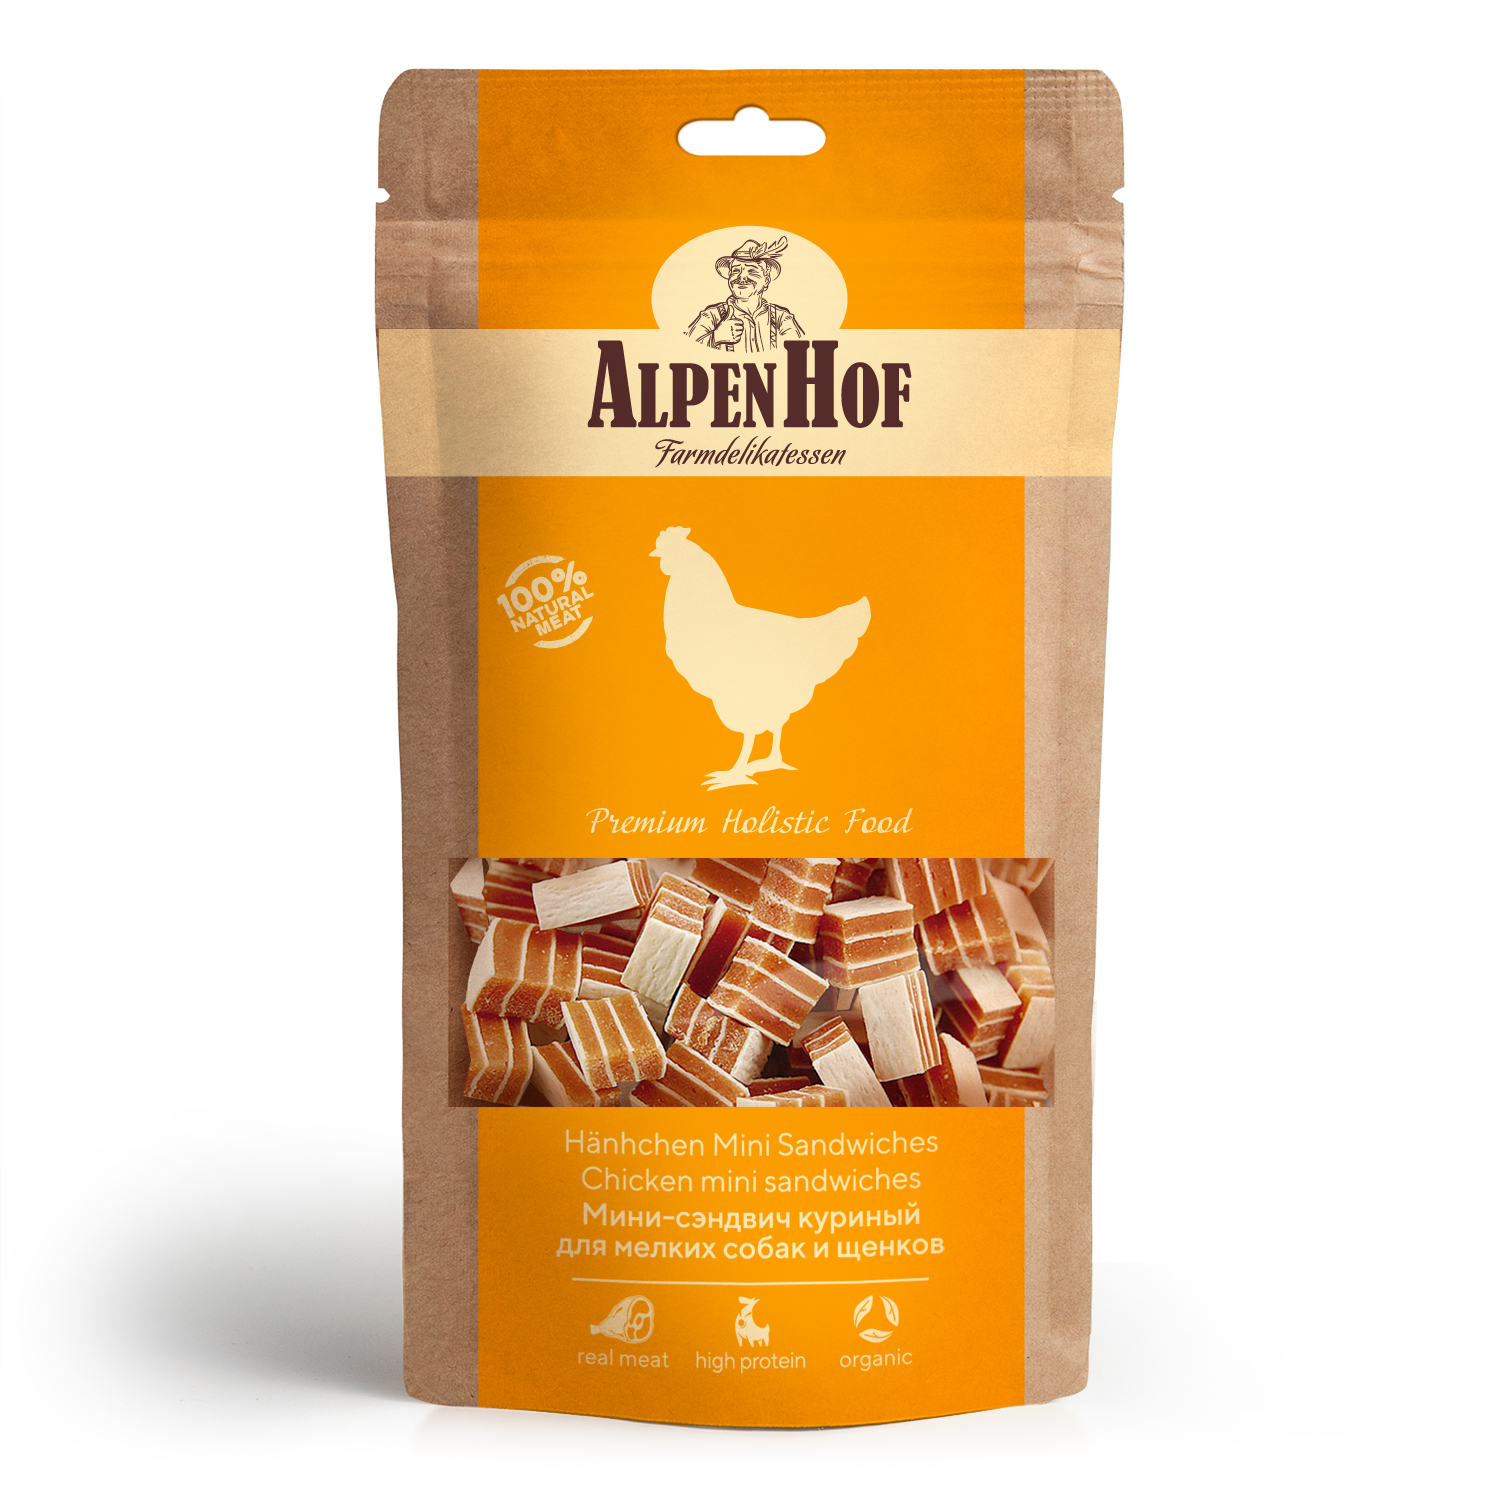 AlpenHof Мини-Сэндвич куриный для мелких собак и щенков 50 г